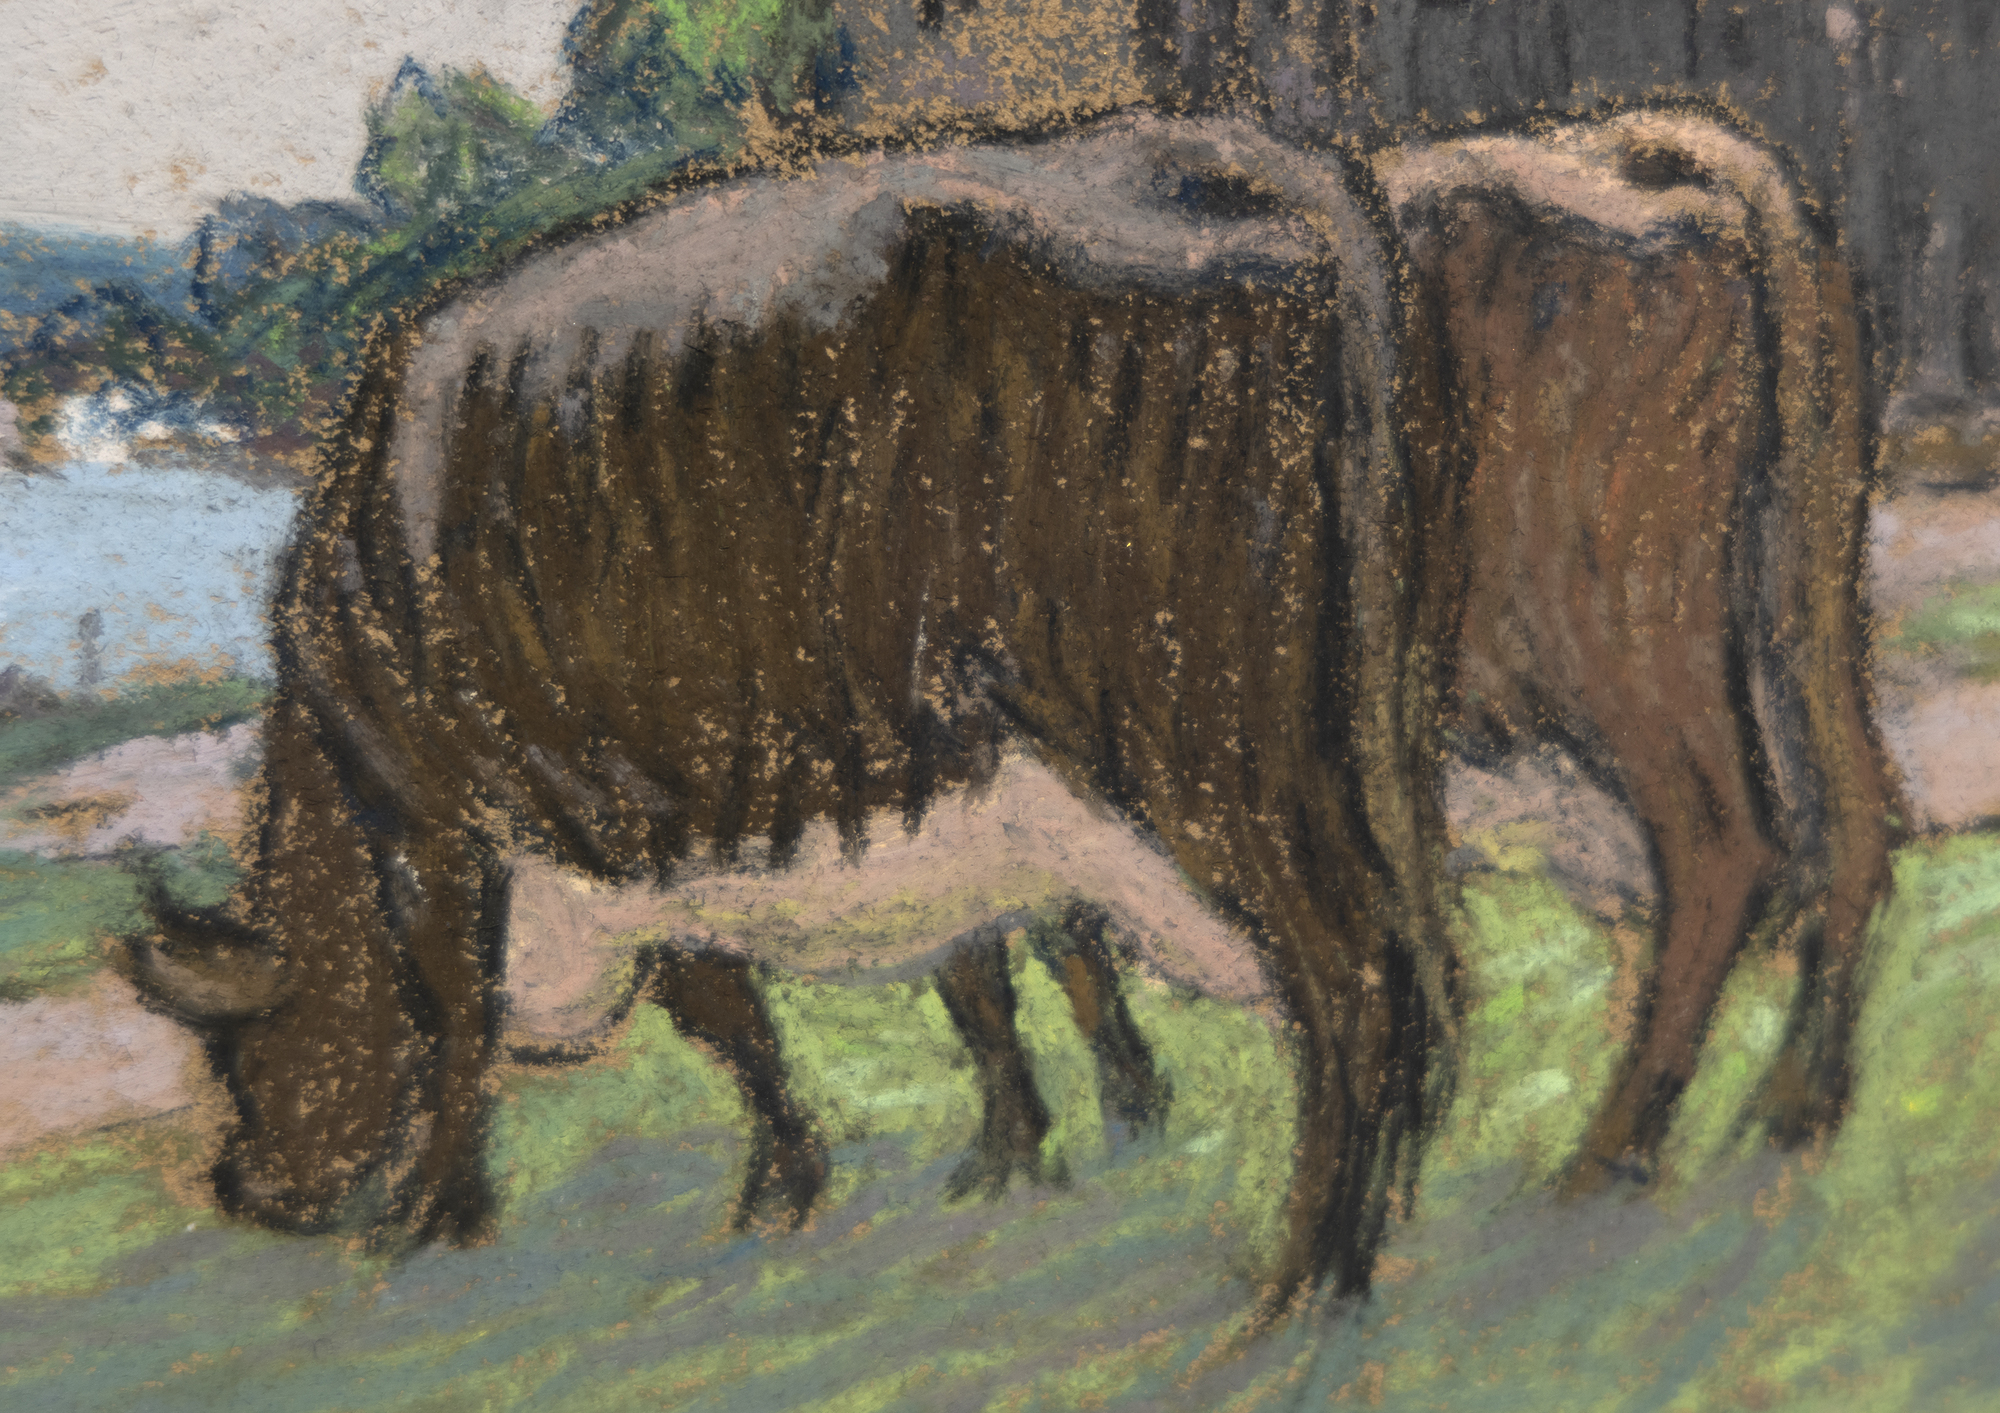 ALFRED SISLEY - Vaches au paturage sur les bords de la Seine - pastel on paper - 11 1/4 x 15 1/2 in.